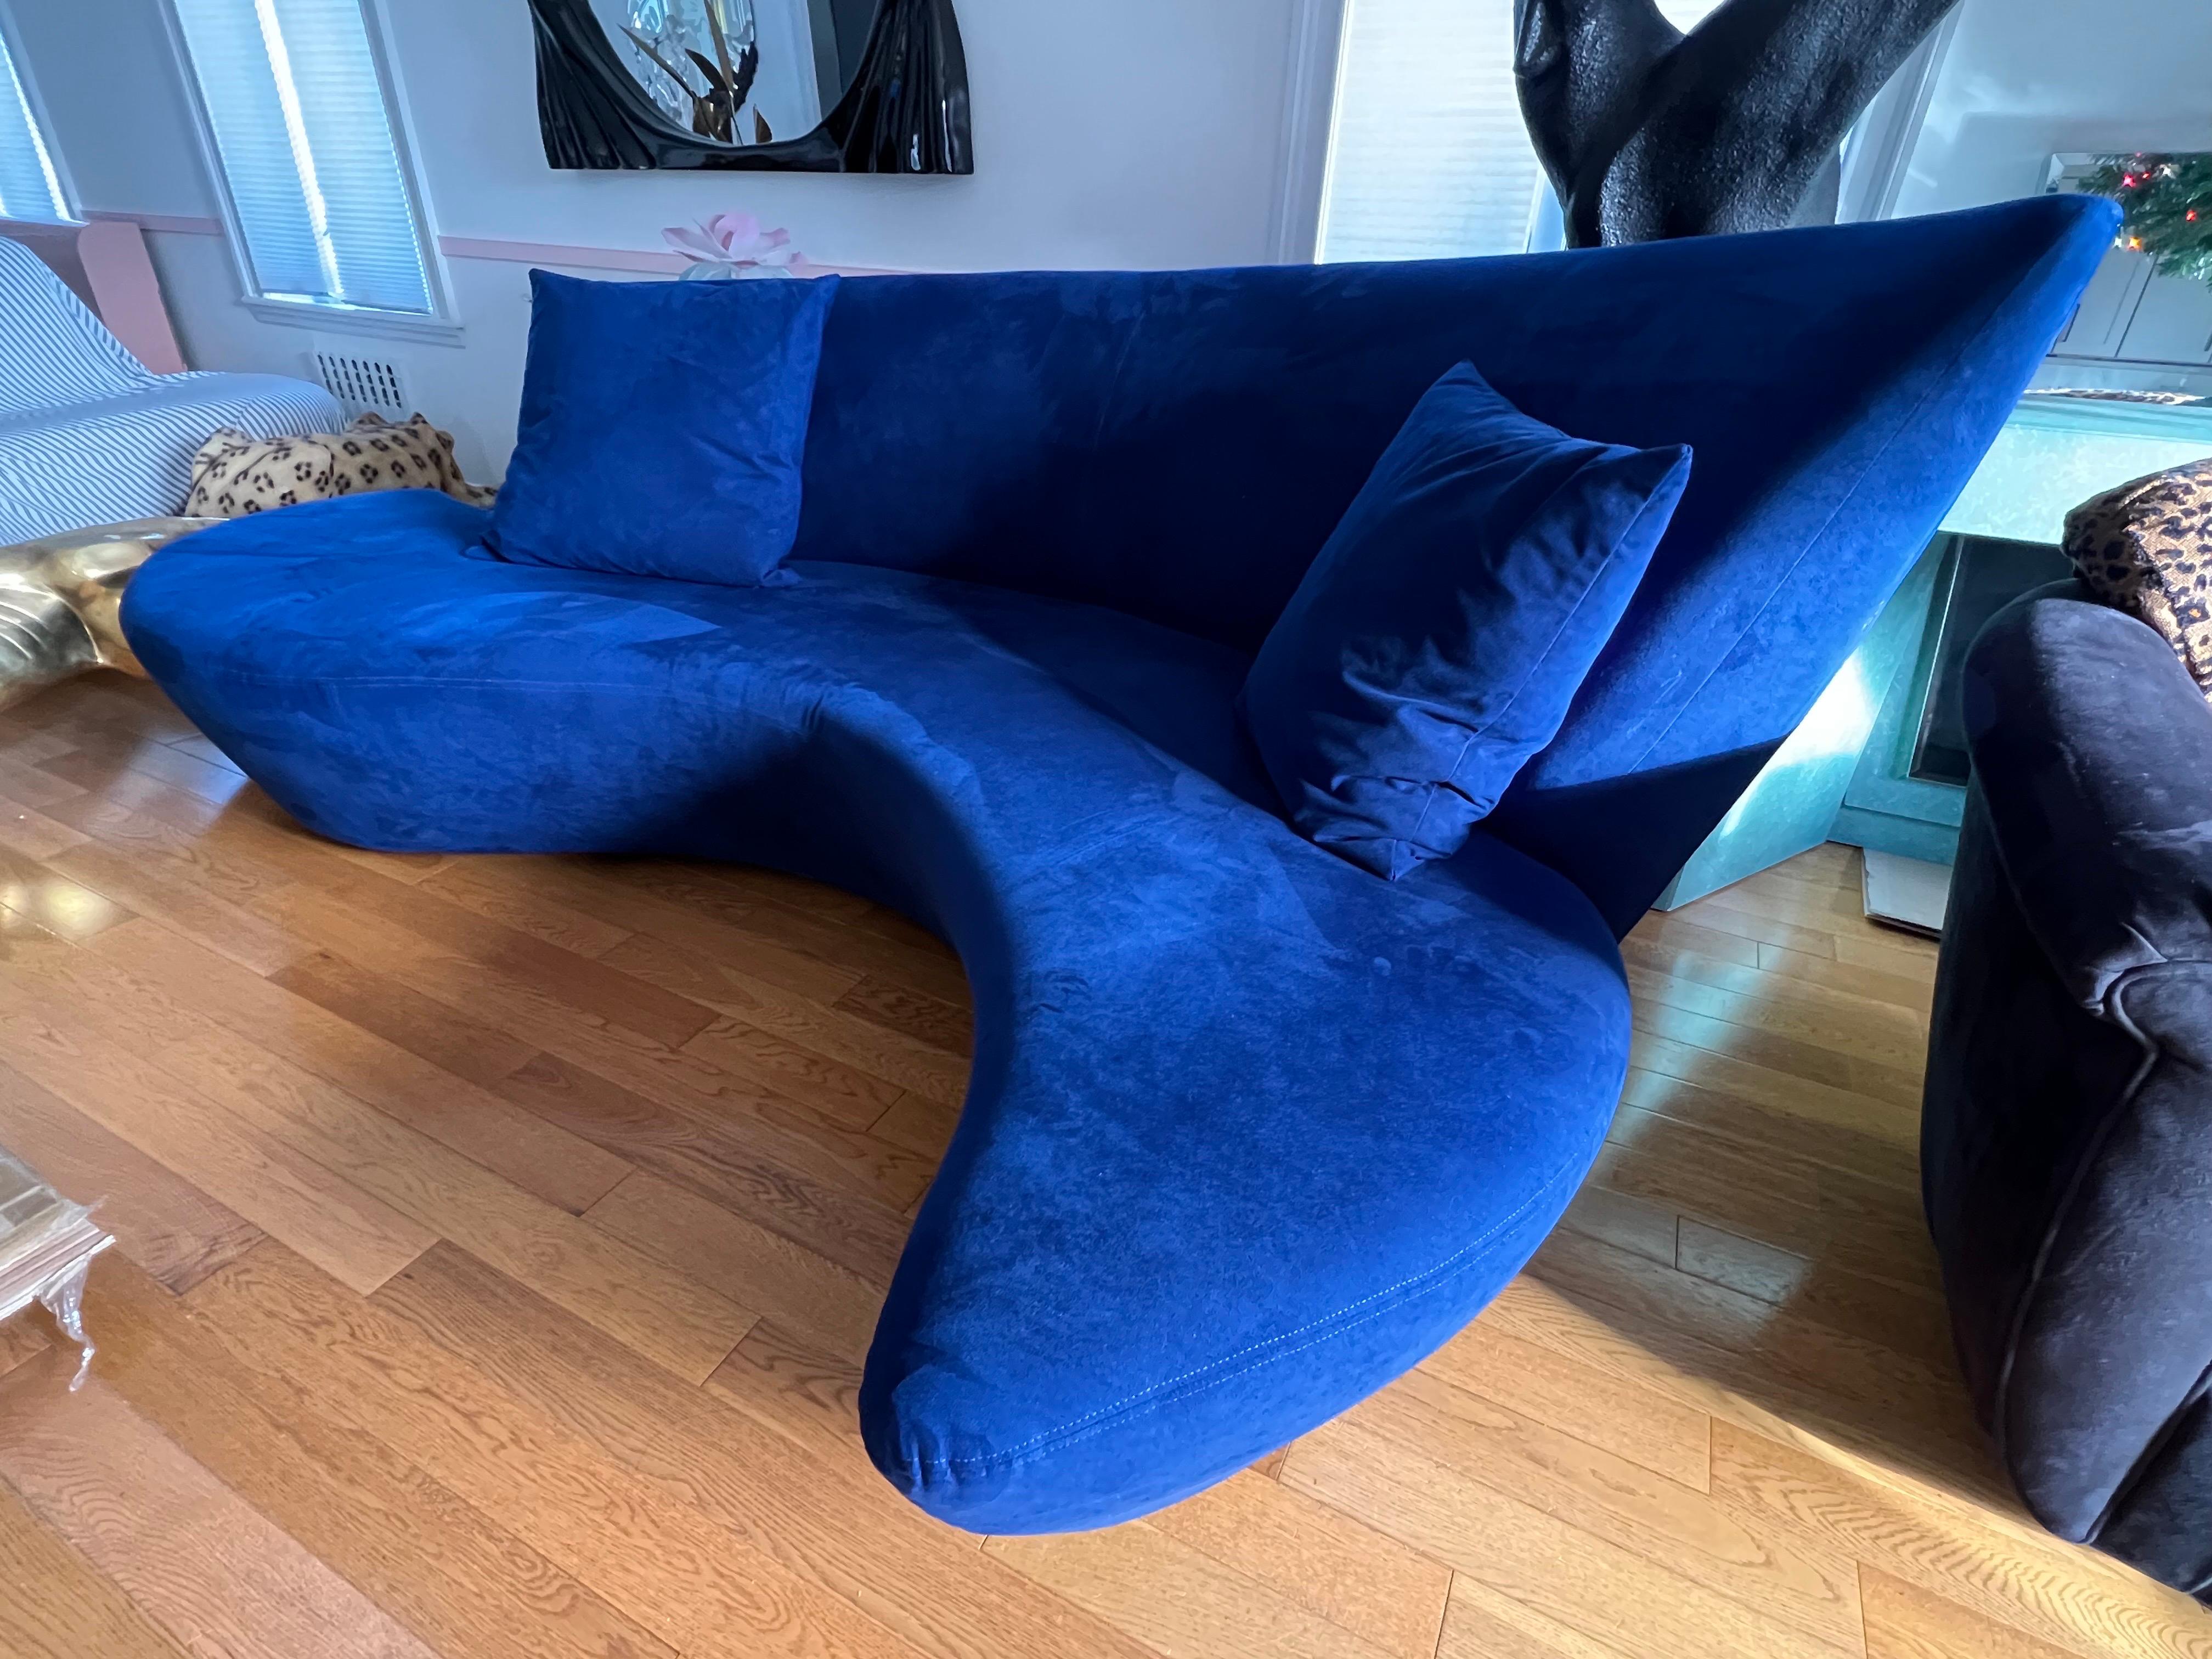 Canapé postmoderne Vladimir Kagan par Preview. Le canapé est recouvert d'ultra daim et est très propre. Veuillez vérifier l'état des photos.